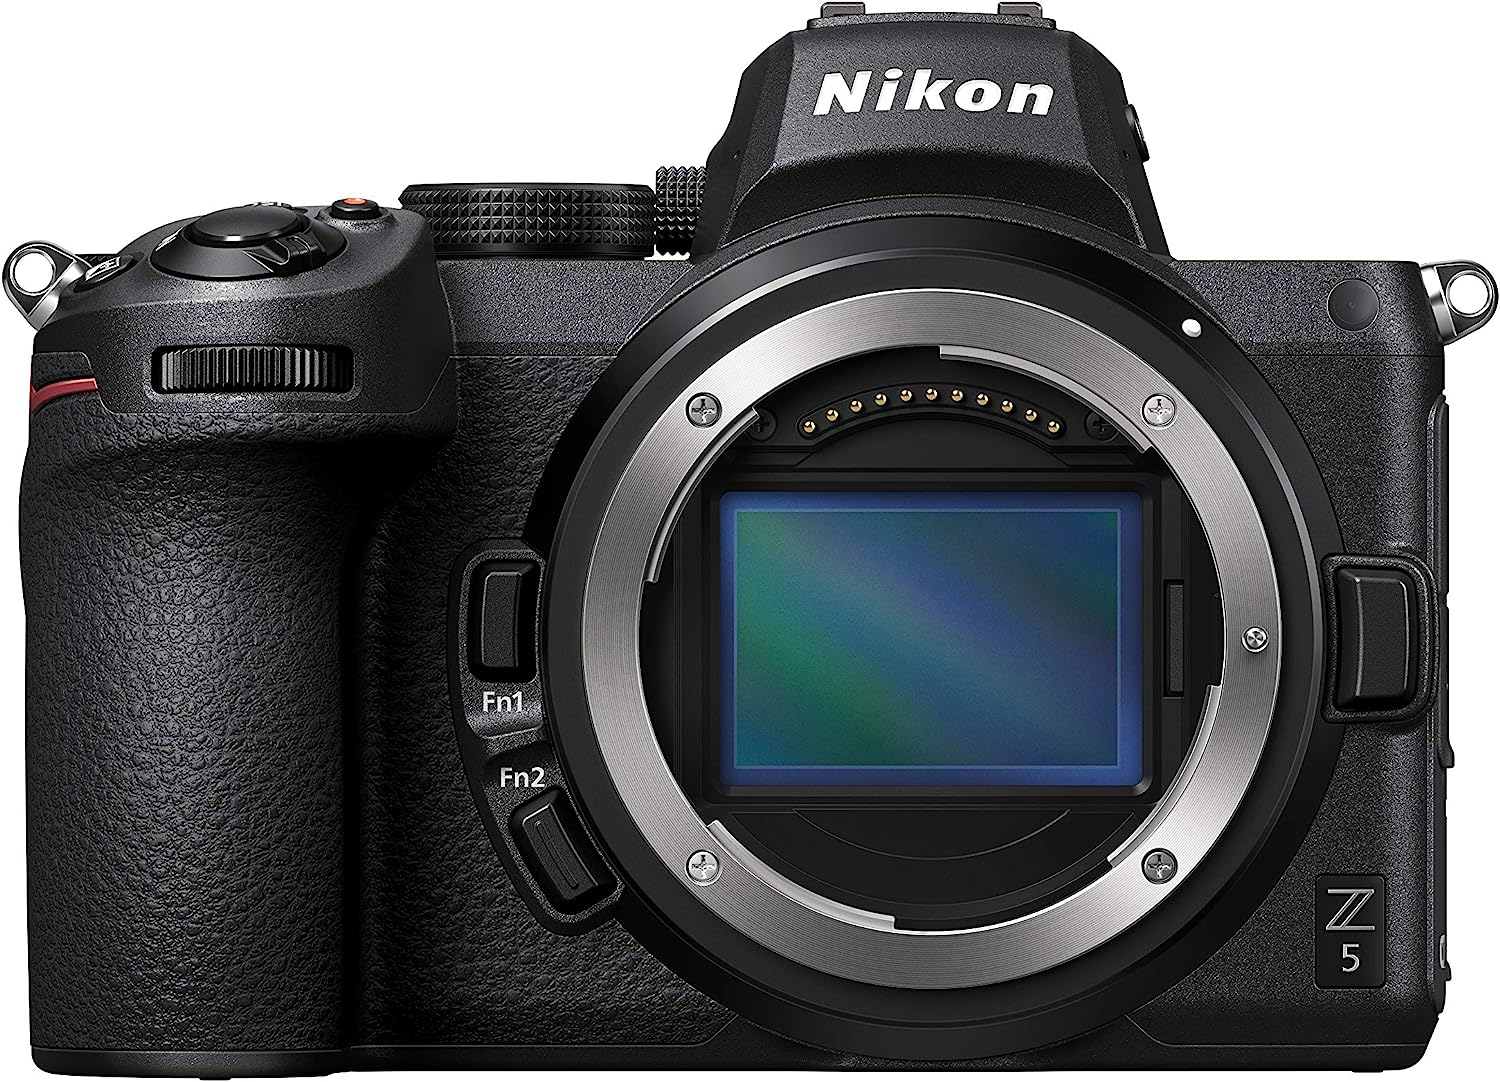 Nikon DSLR Camera Comparison